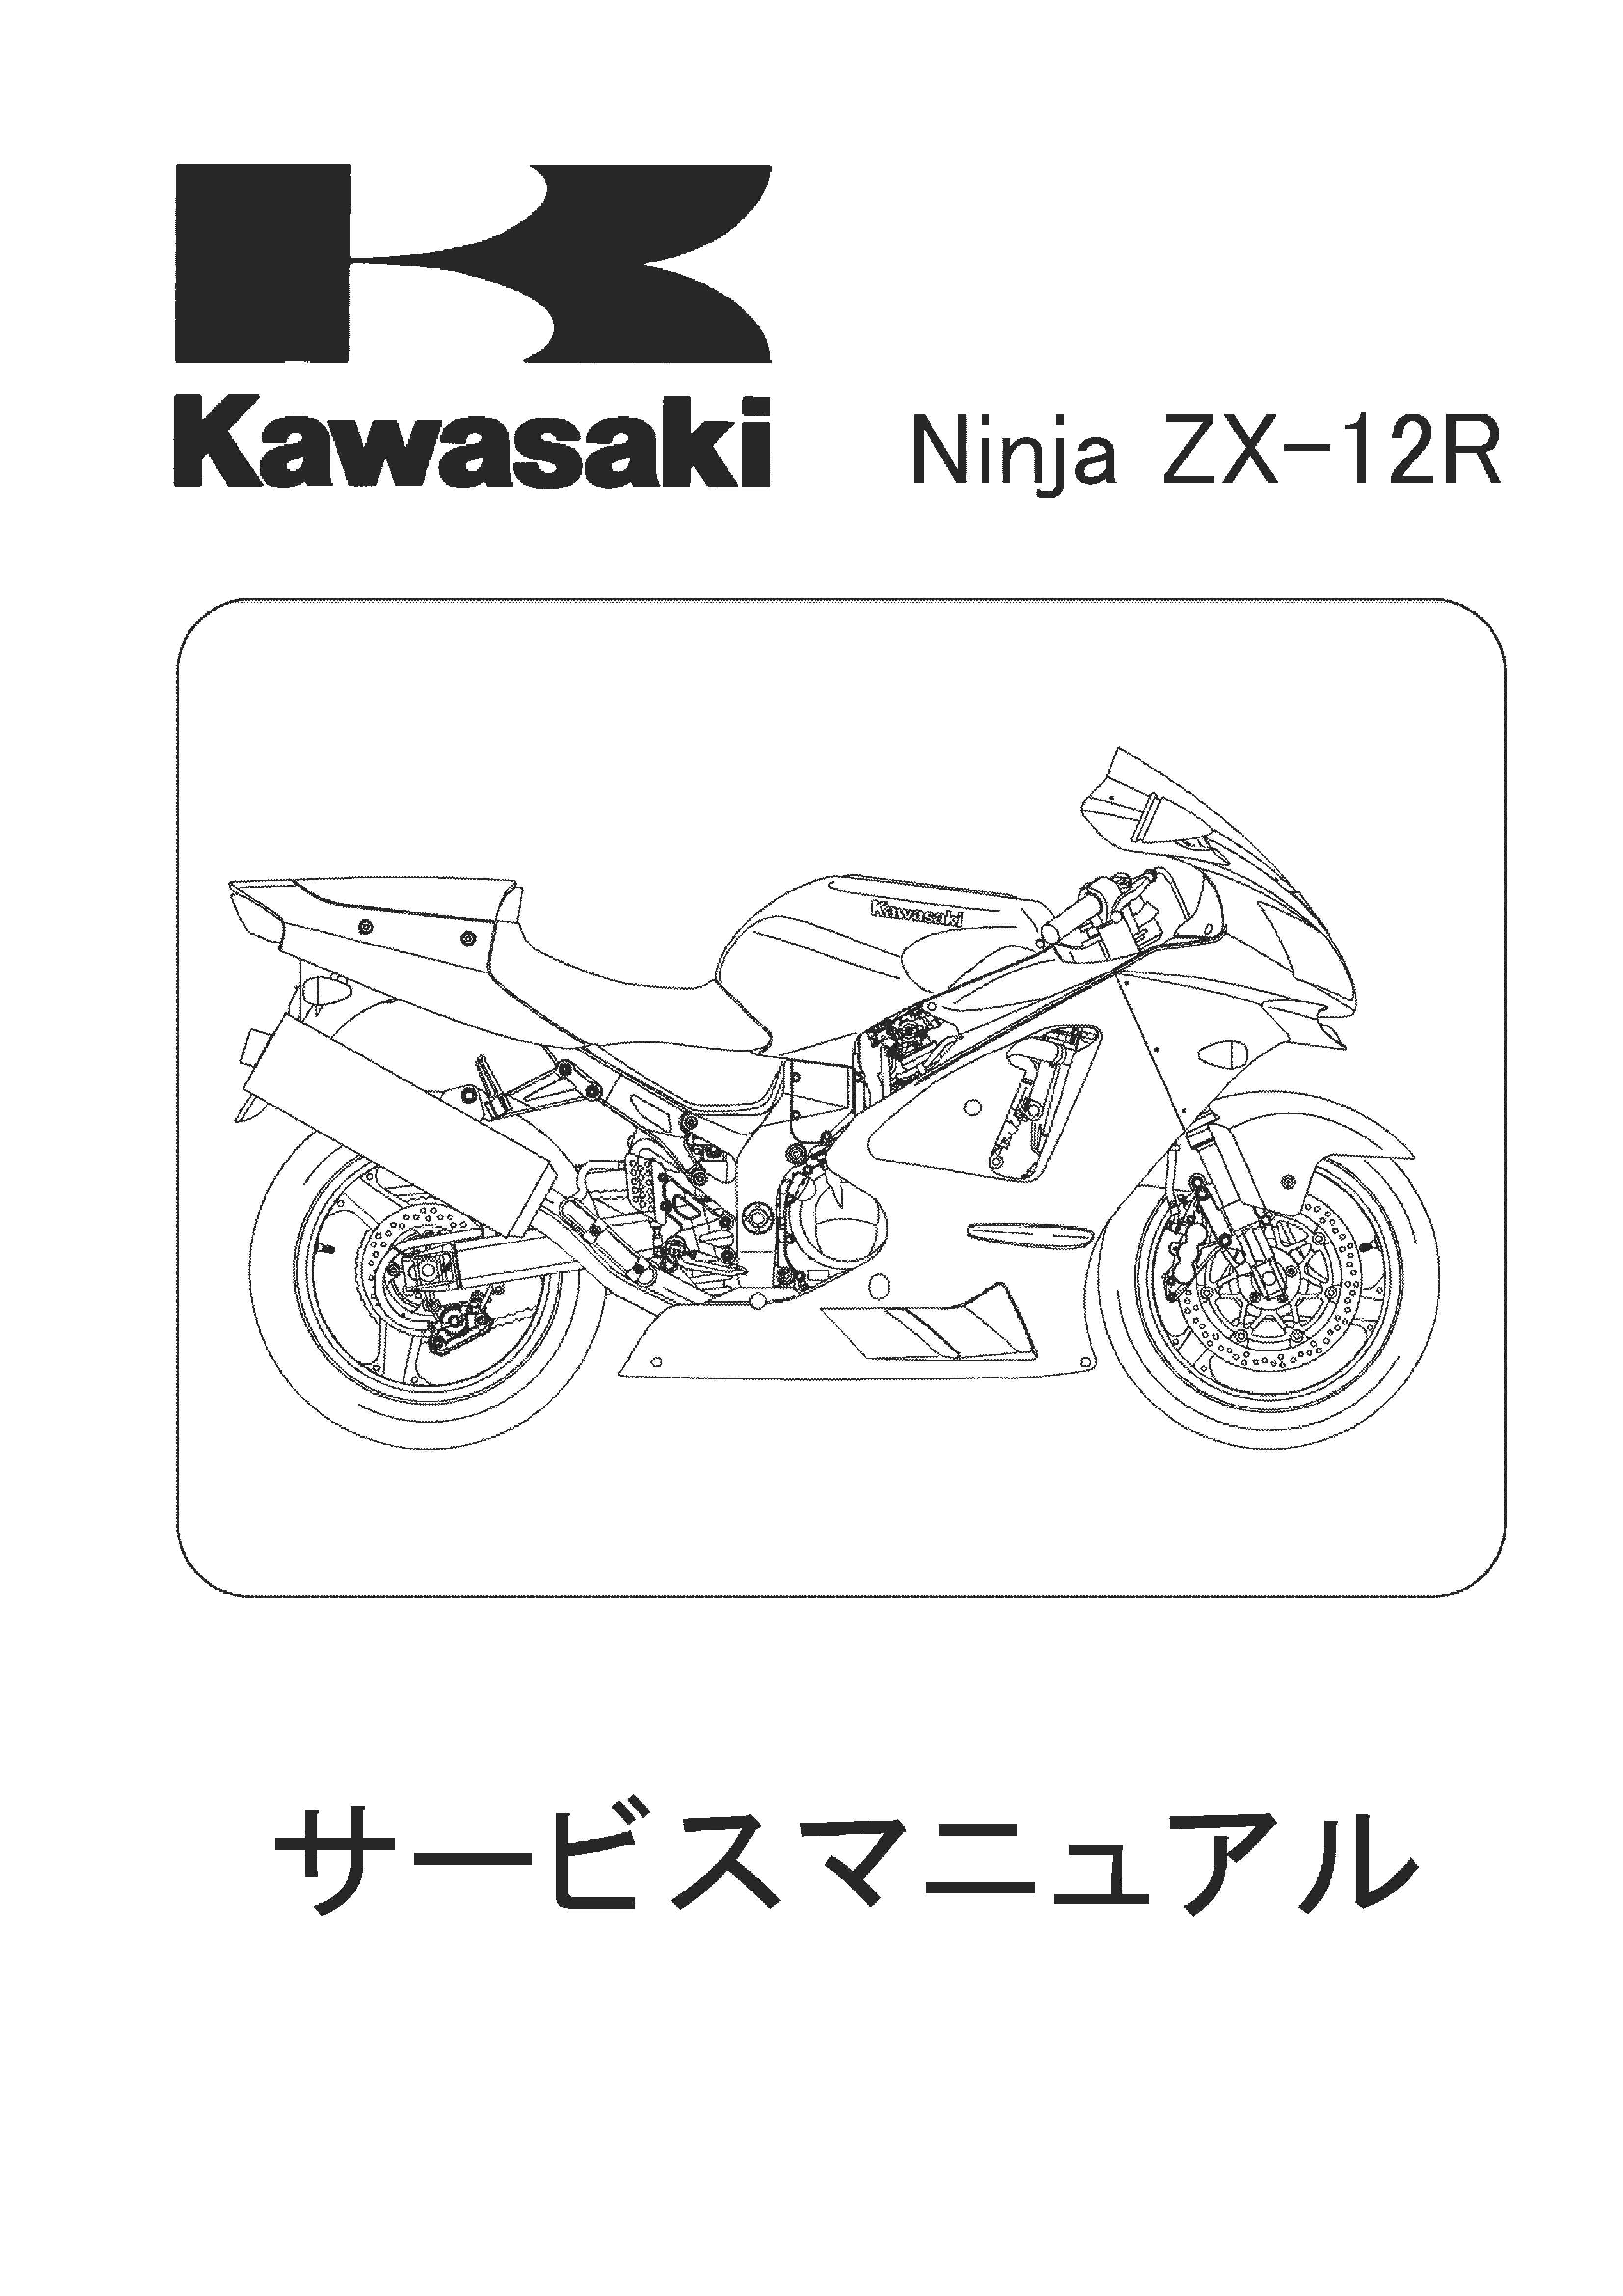 Kawasaki サービスマニュアル - カタログ/マニュアル